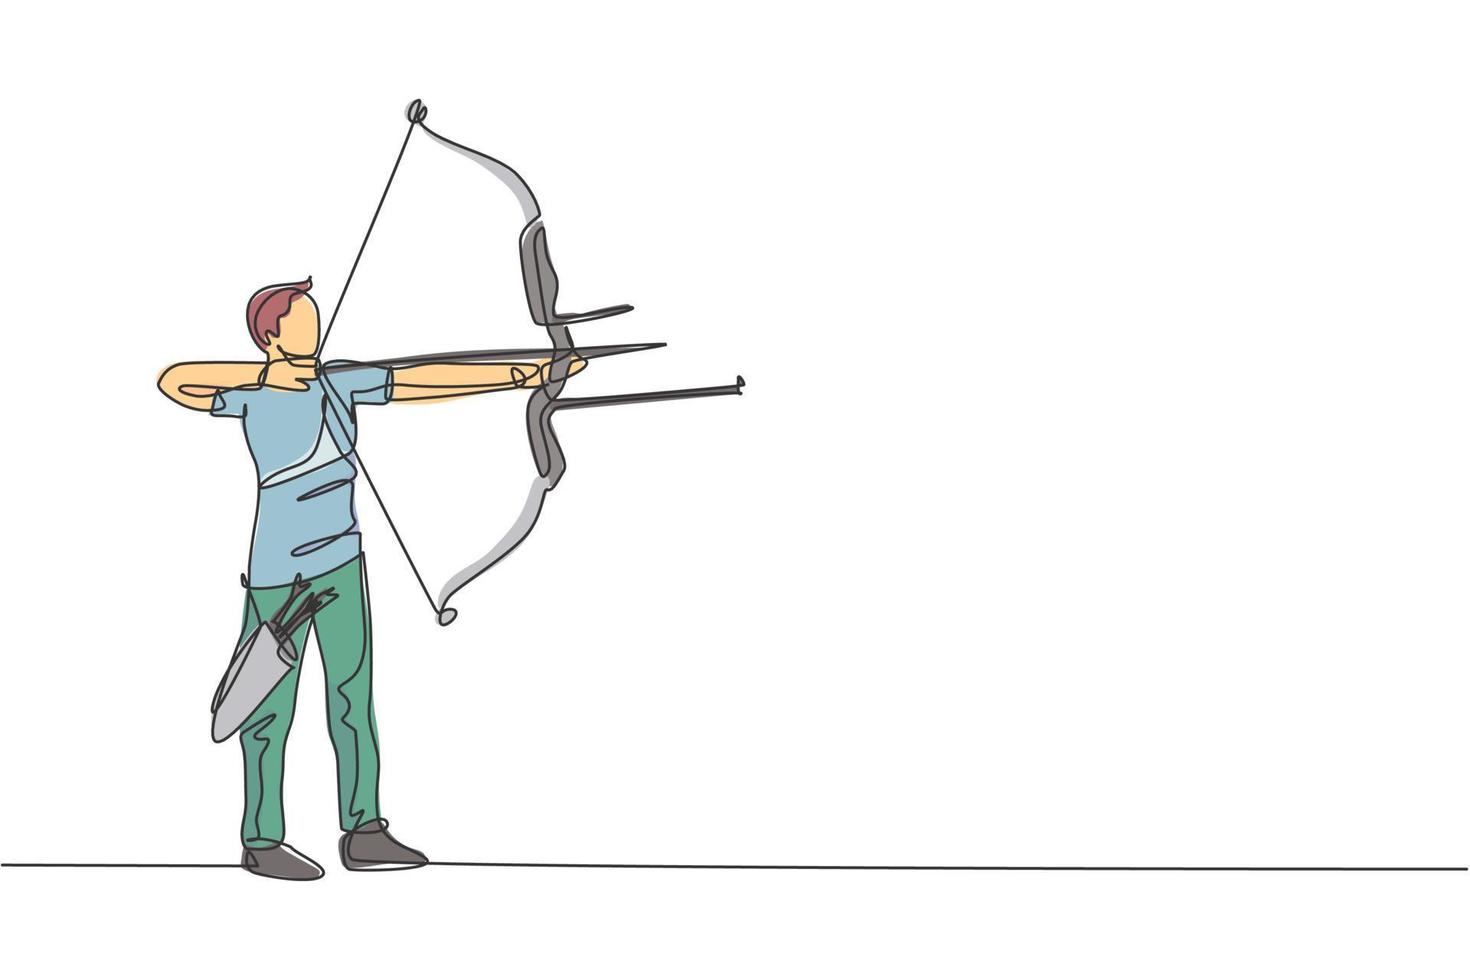 un dessin en ligne continu d'un jeune archer tirant un arc pour tirer sur une cible de tir à l'arc. concept d'entraînement et d'exercice de sport de tir à l'arc. illustration vectorielle graphique de conception de dessin à une seule ligne dynamique vecteur